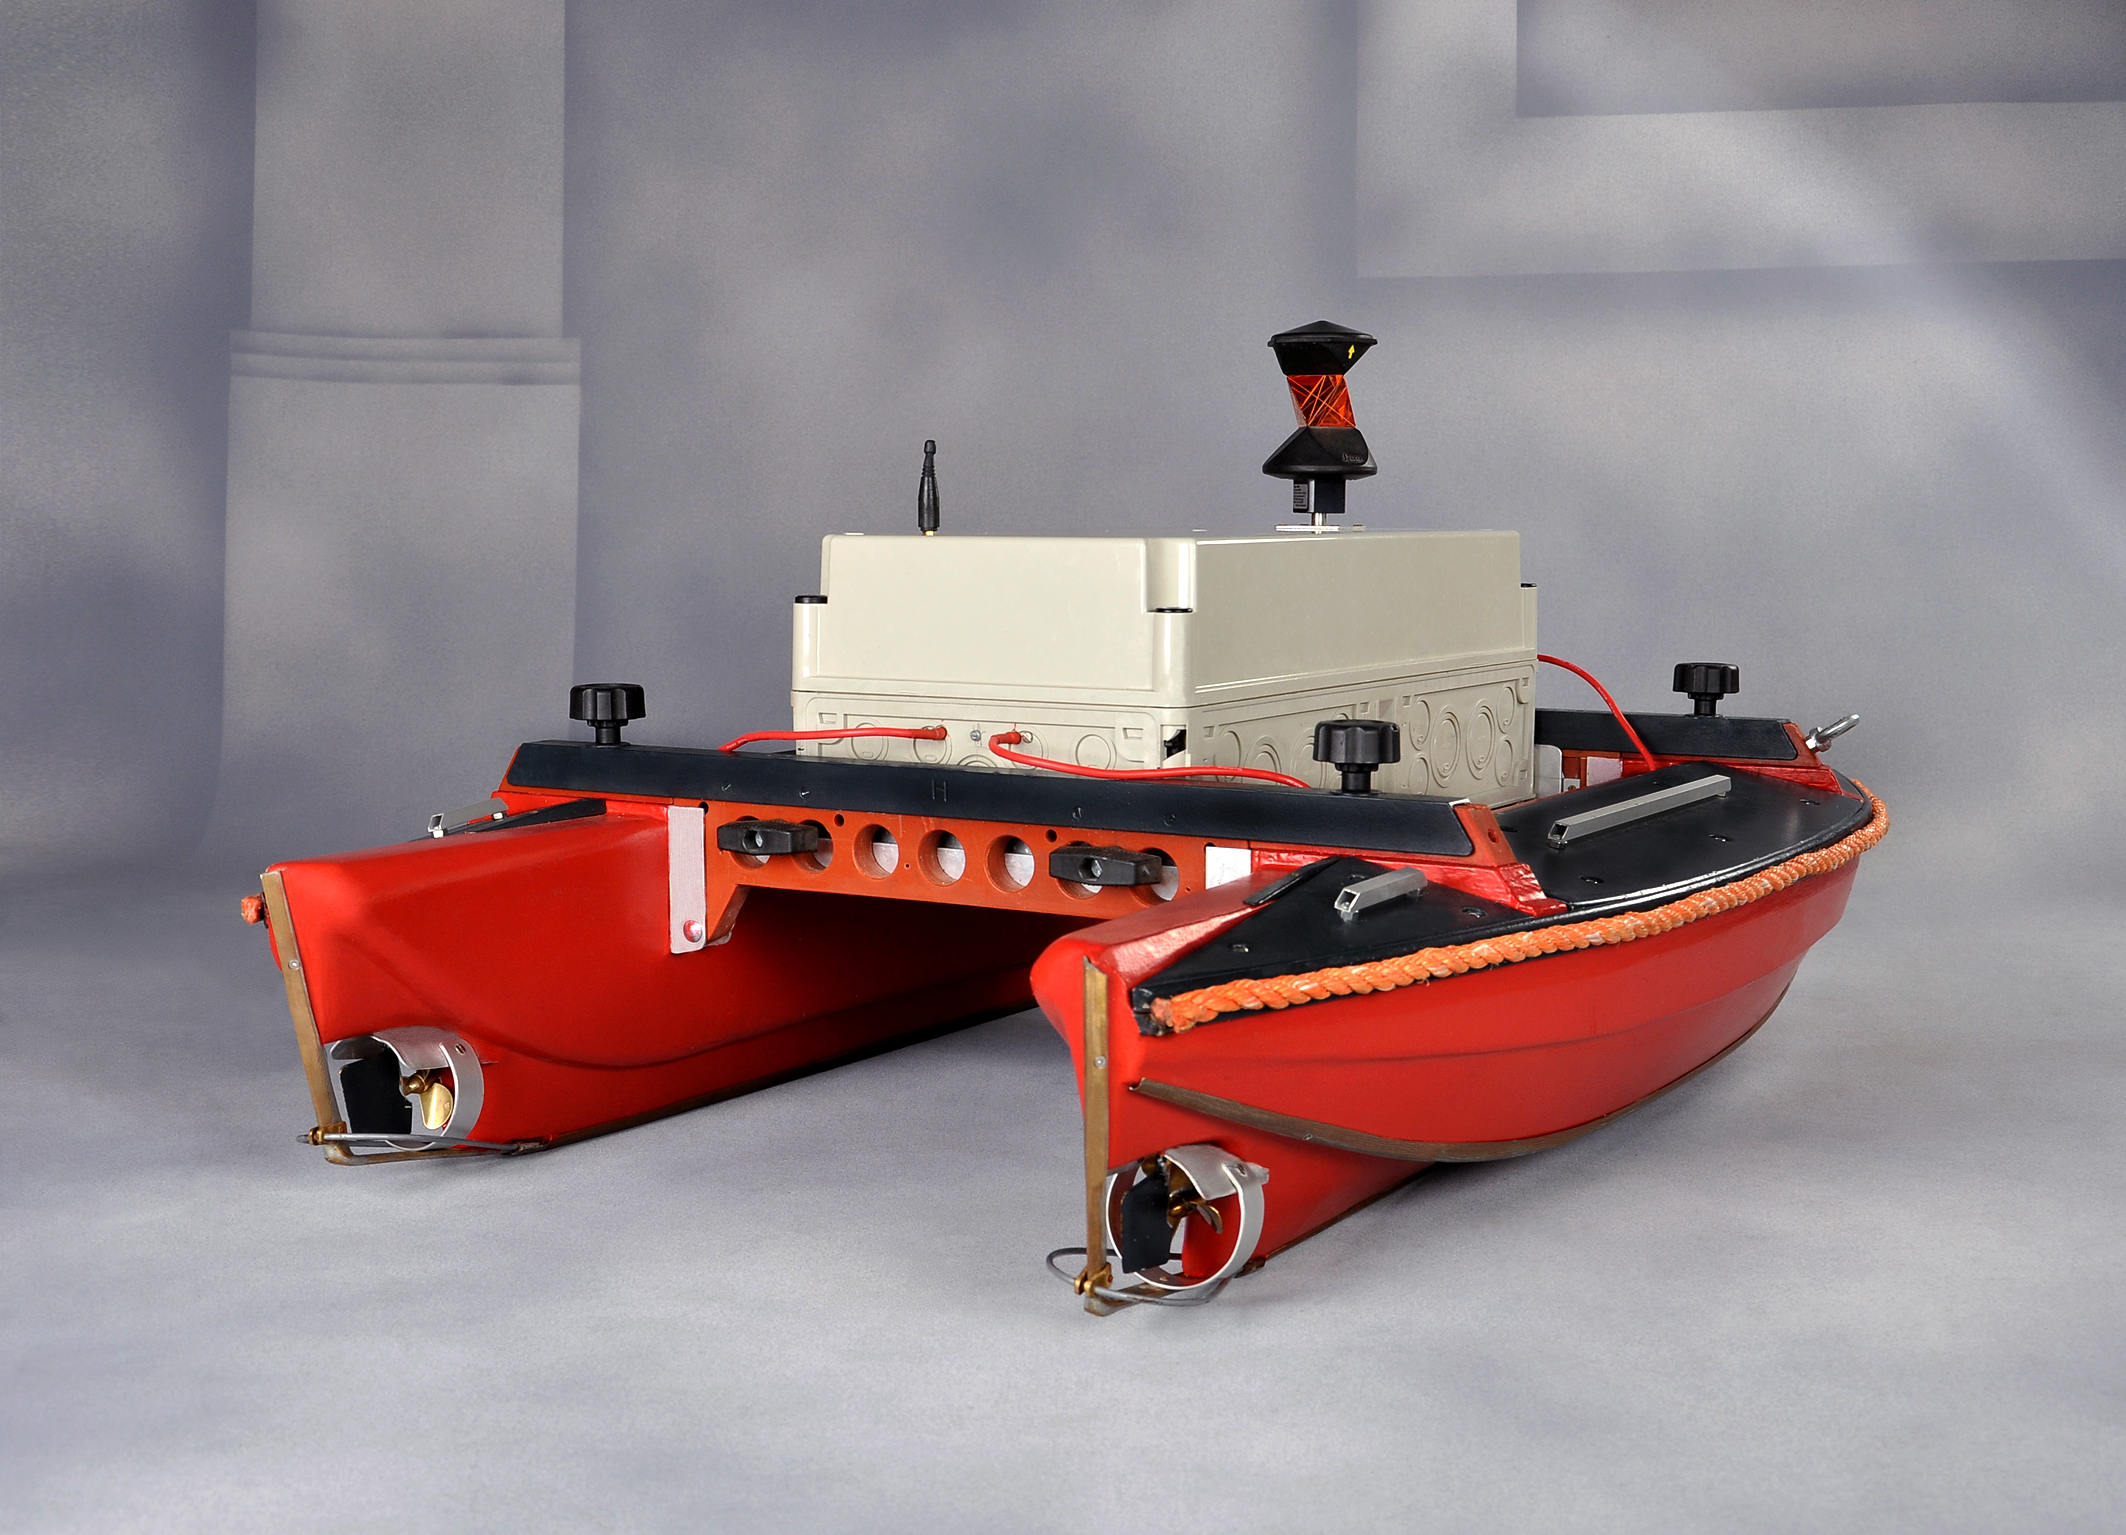 Bild 4: Ferngesteuertes Boot für Peilungsmessungen